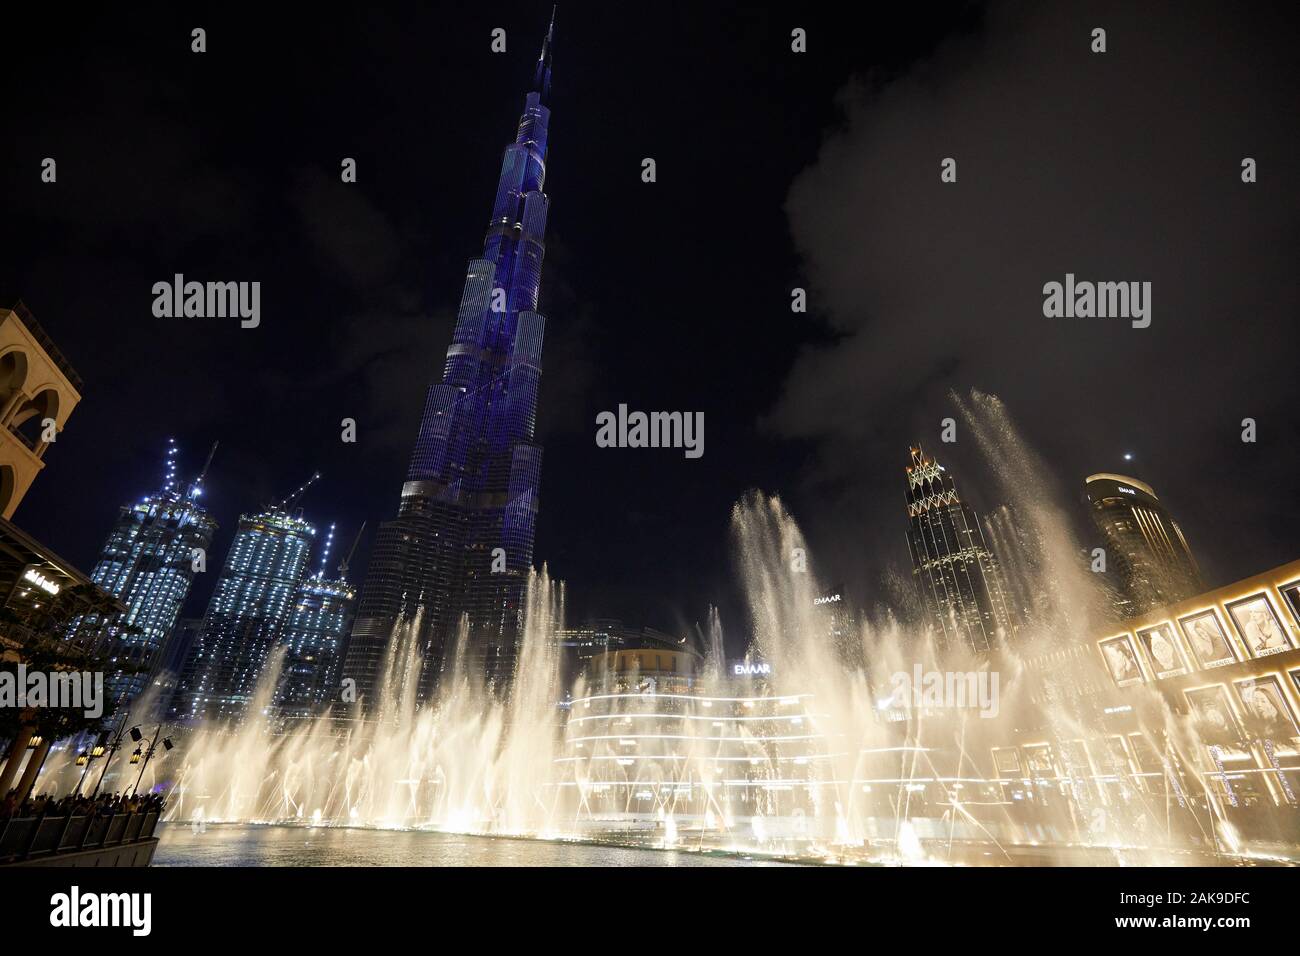 DUBAI, VEREINIGTE ARABISCHE EMIRATE - November 21, 2019: Burj Dubai Wolkenkratzer in Blau und Fountain Show vor Dubai Mall bei Nacht beleuchtet Stockfoto